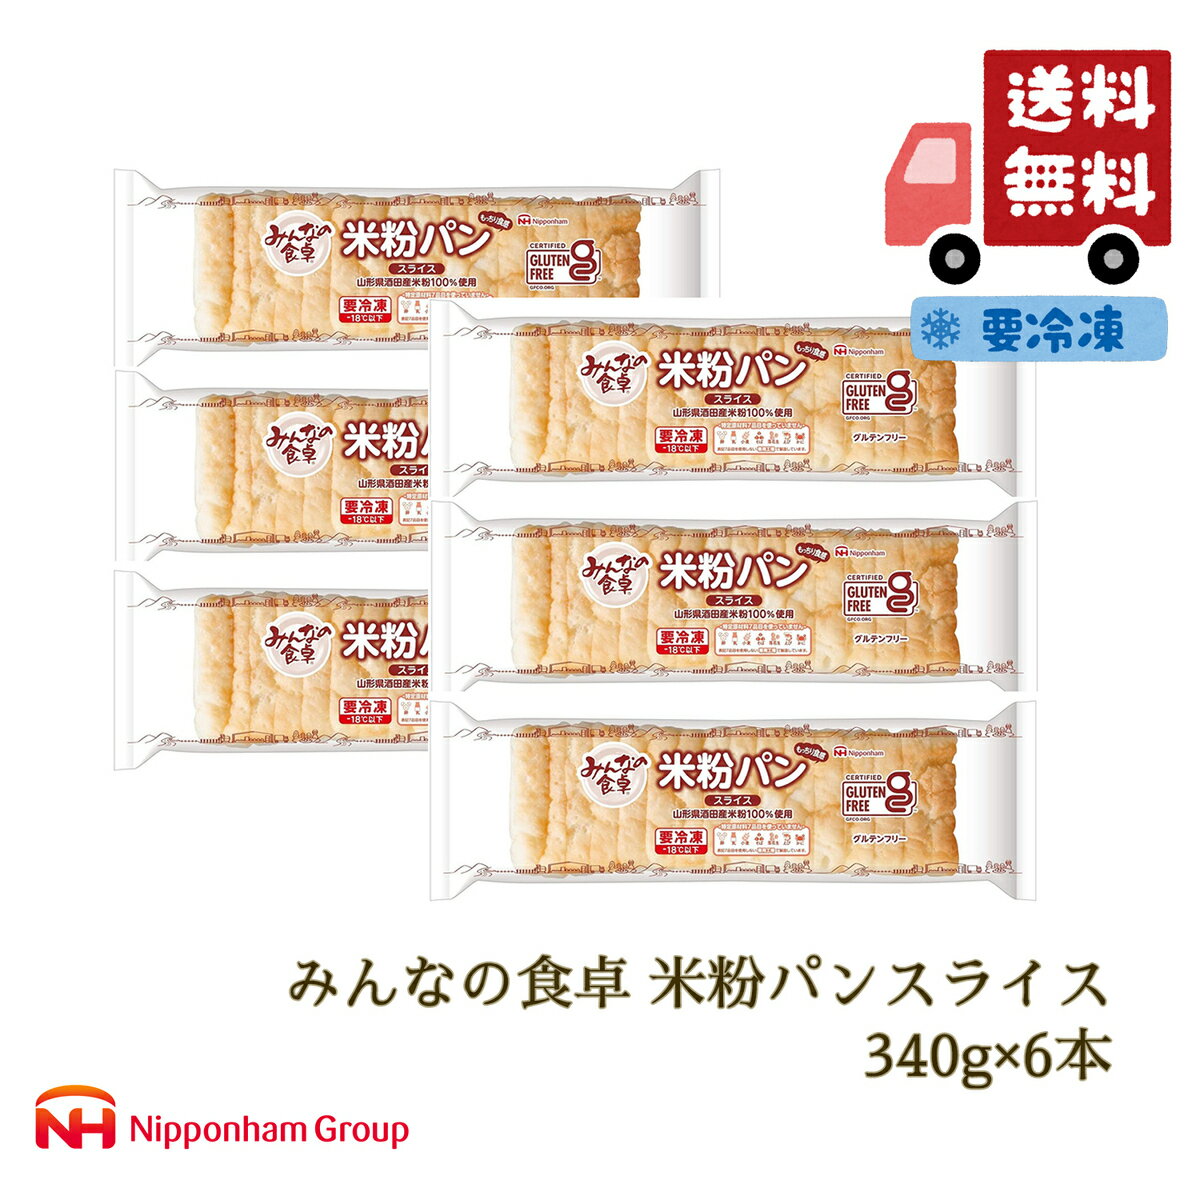 日本ハム『みんなの食卓 米粉パンスライス 340g』